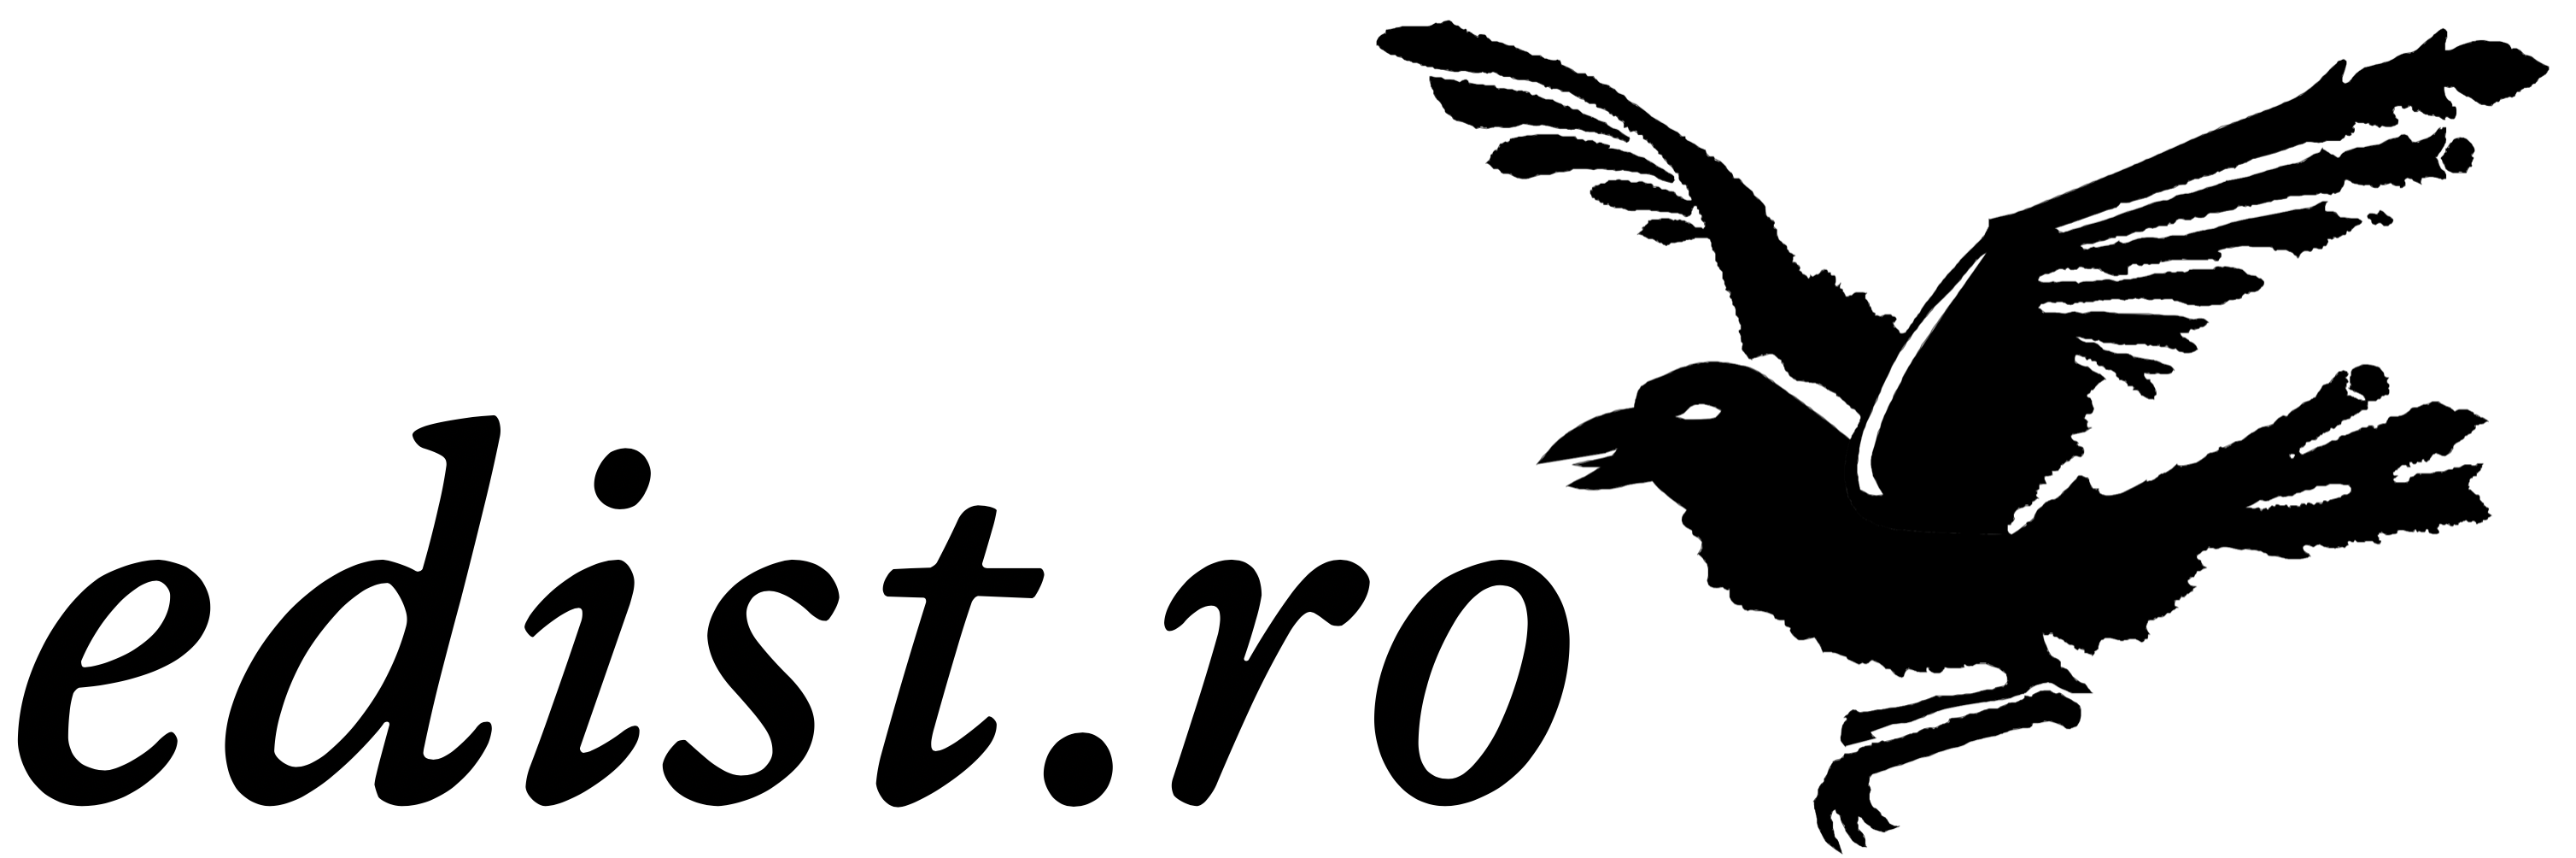 Edistro-logo.png